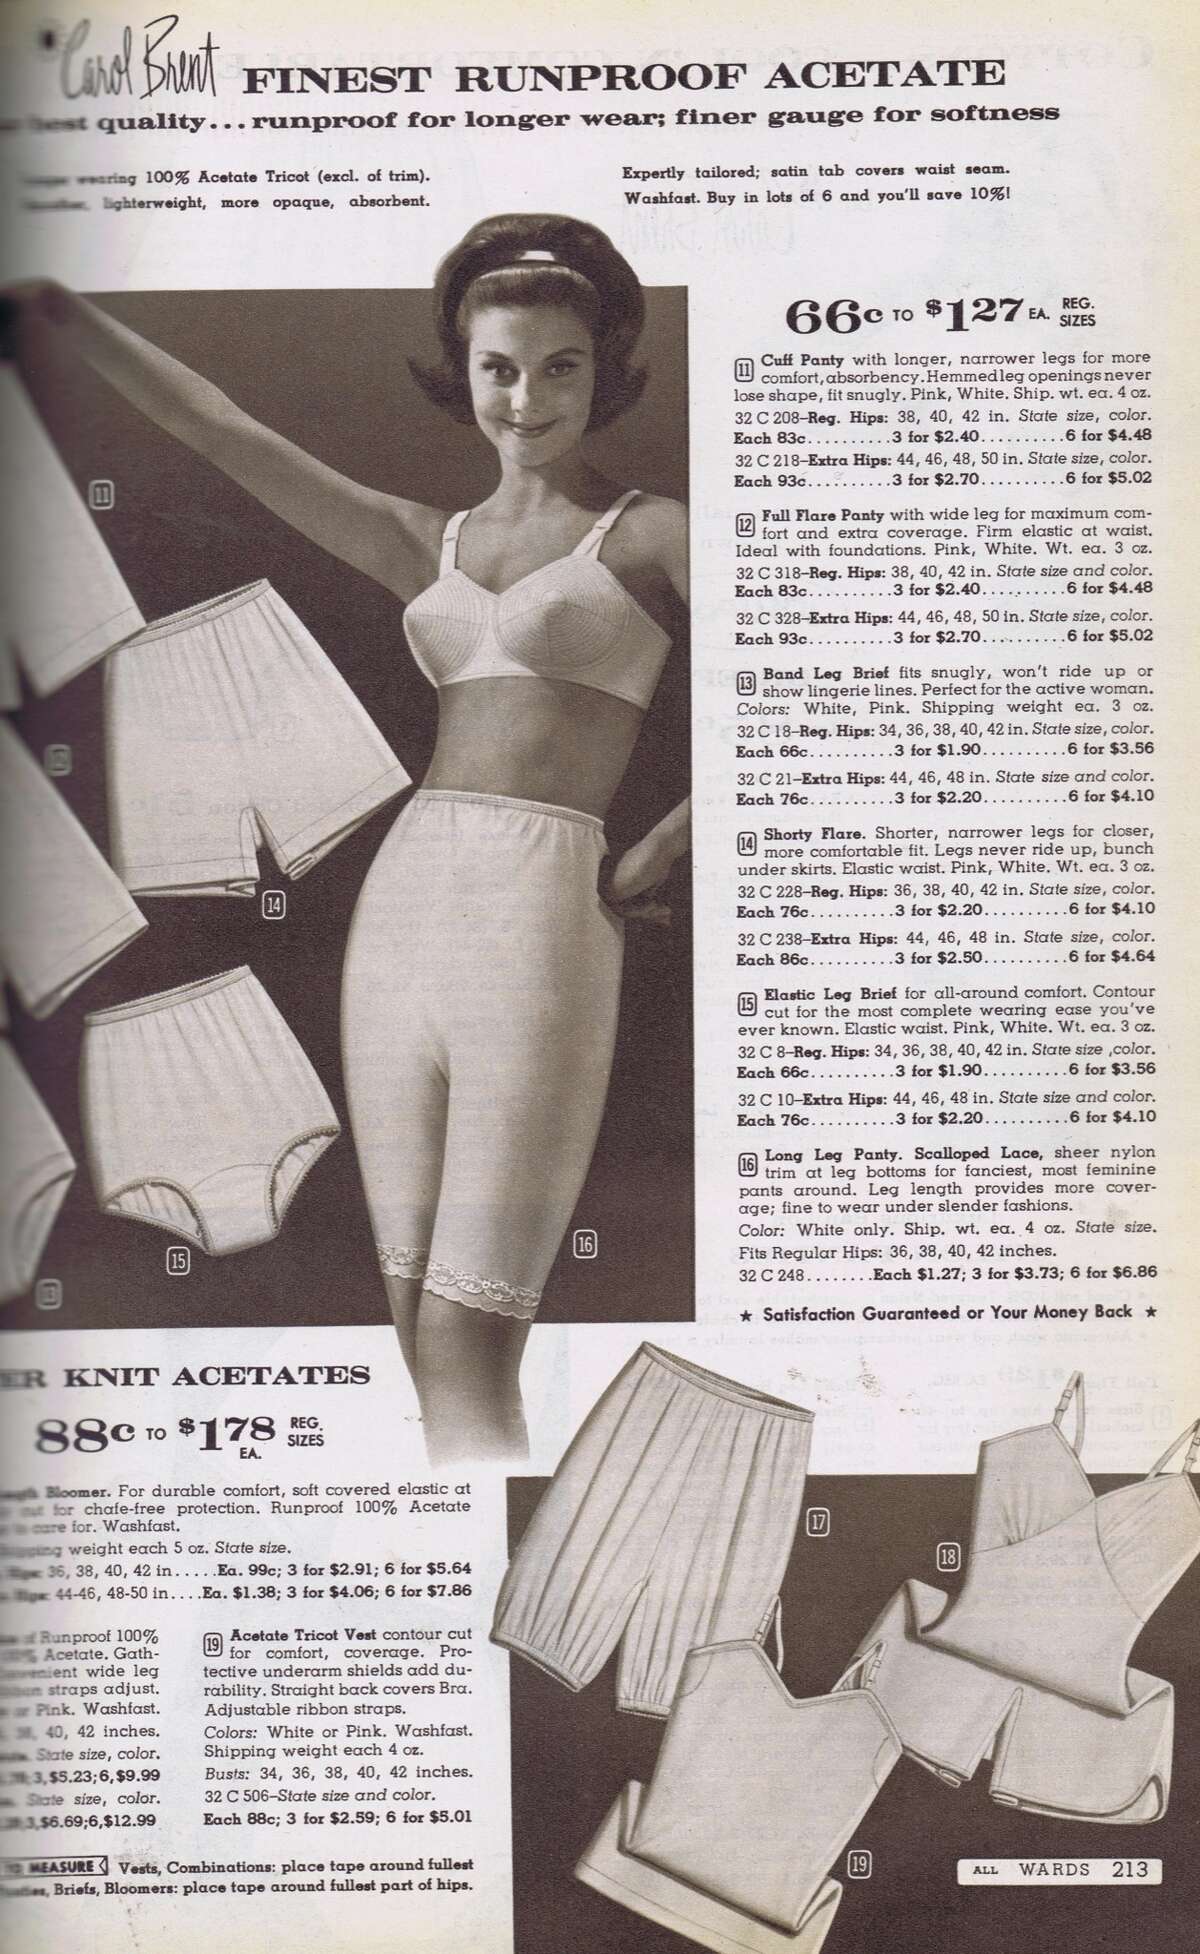 70 Retro Undies - Catalog porn - Underwear ads through the 20th century